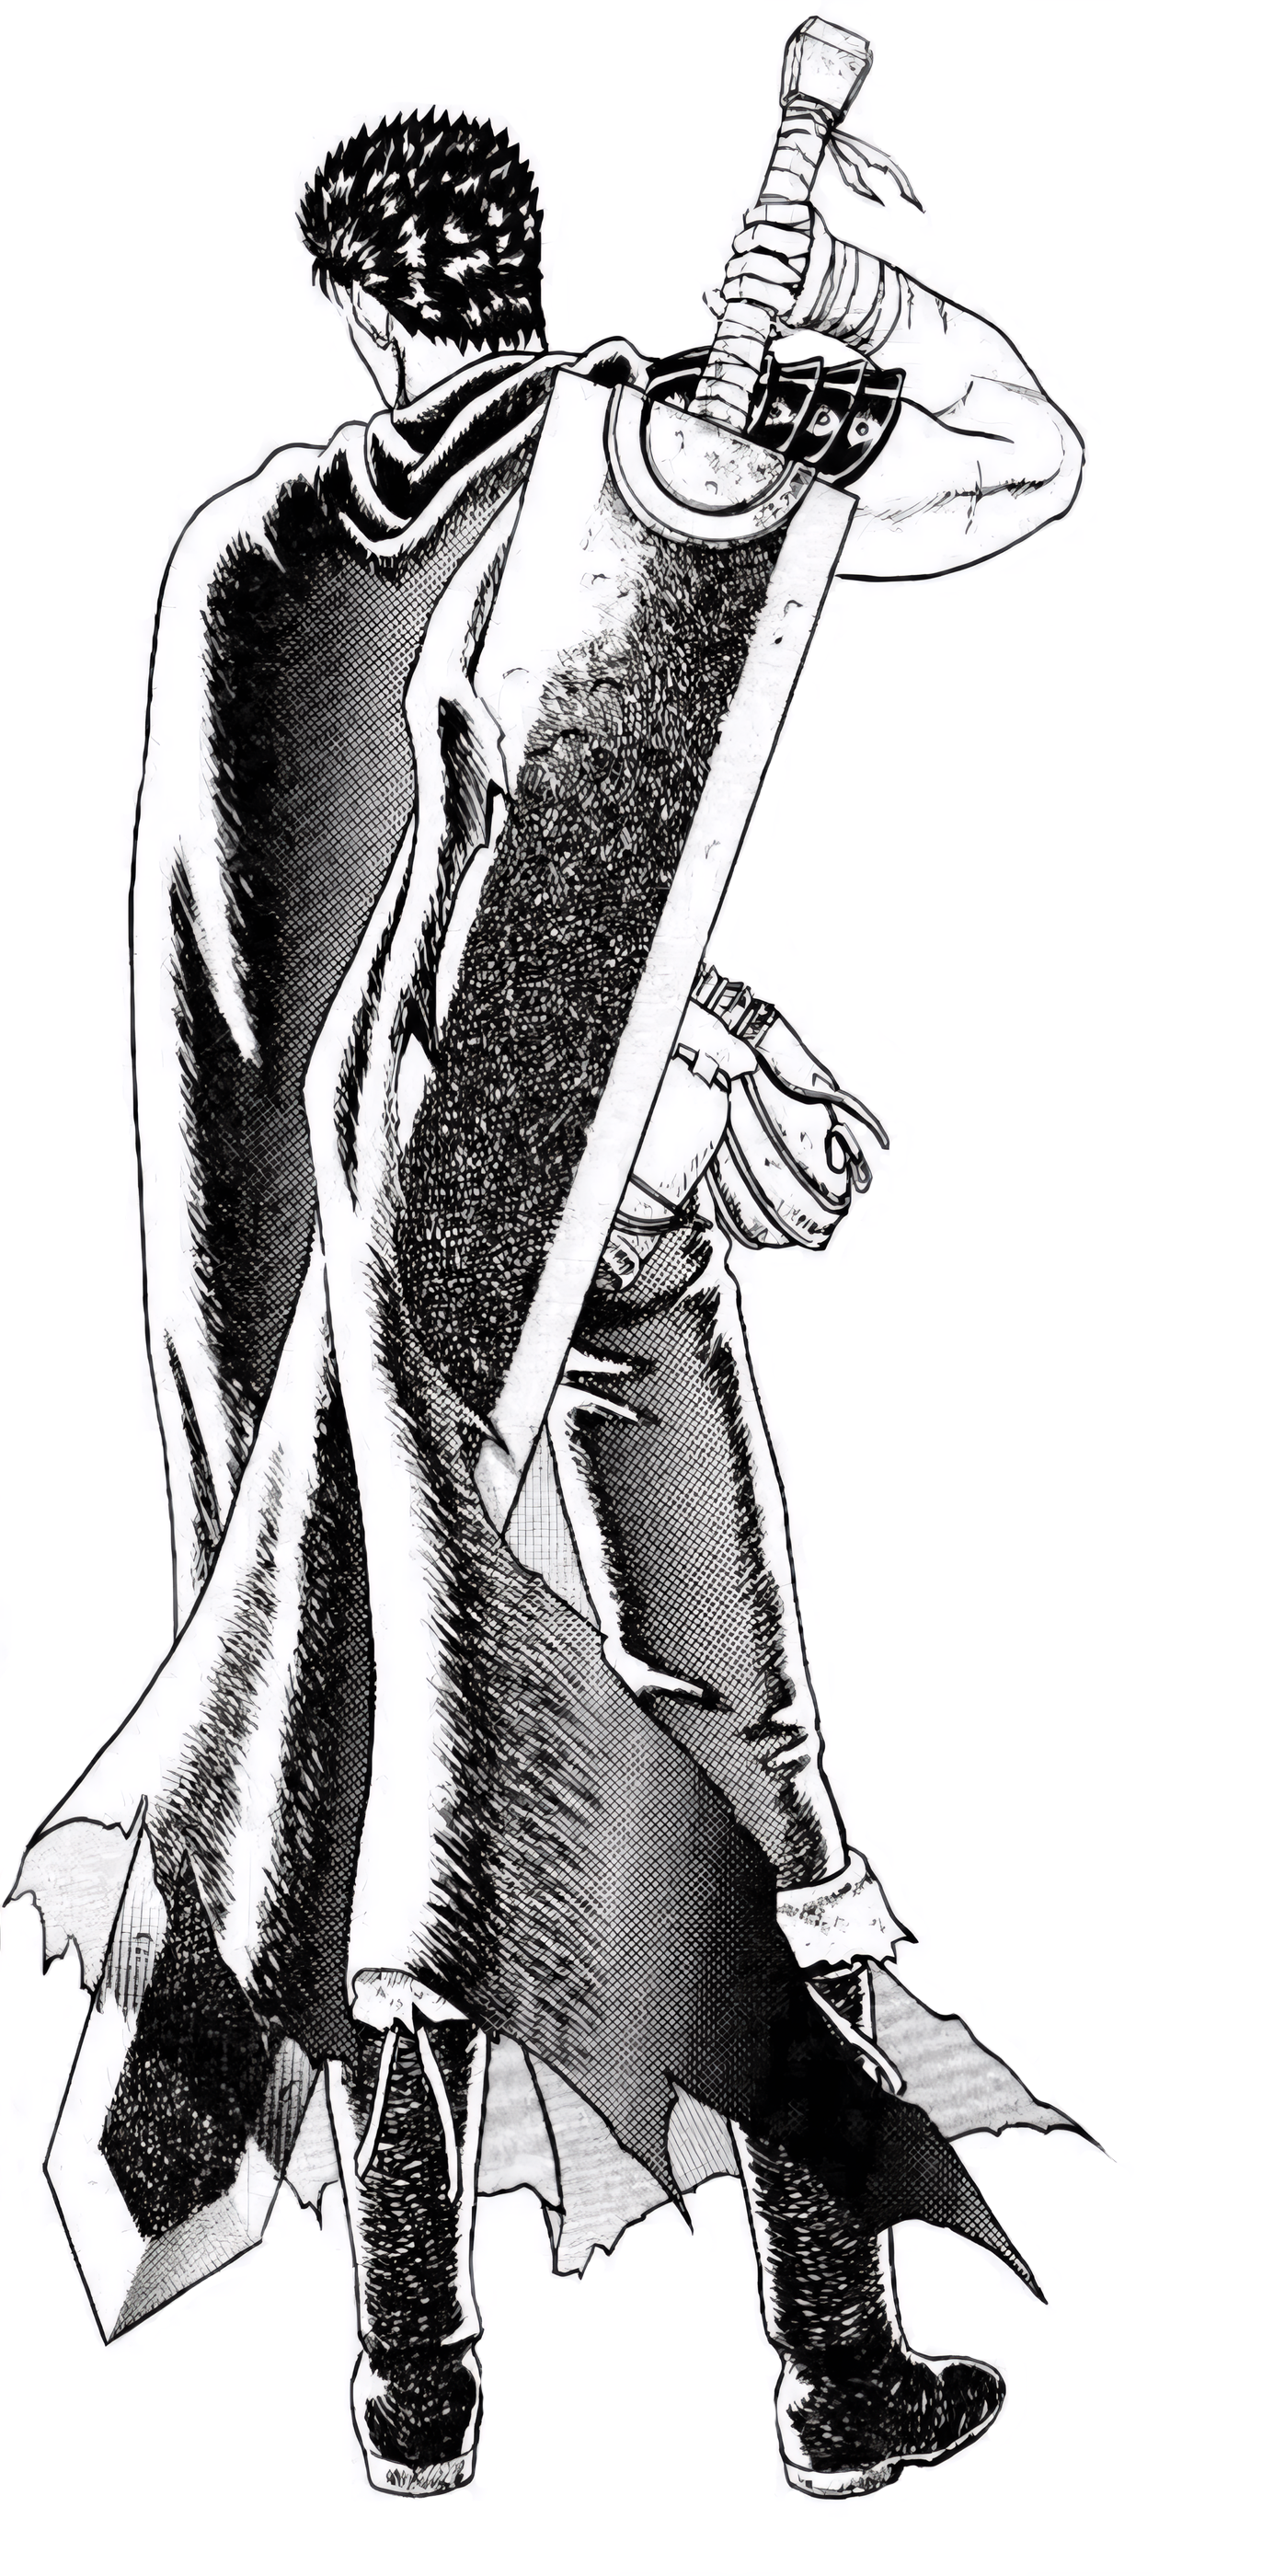 Anime 1397x2800 manga Berserk Guts greatsword sword cape short hair boots upscaled Kentaro Miura